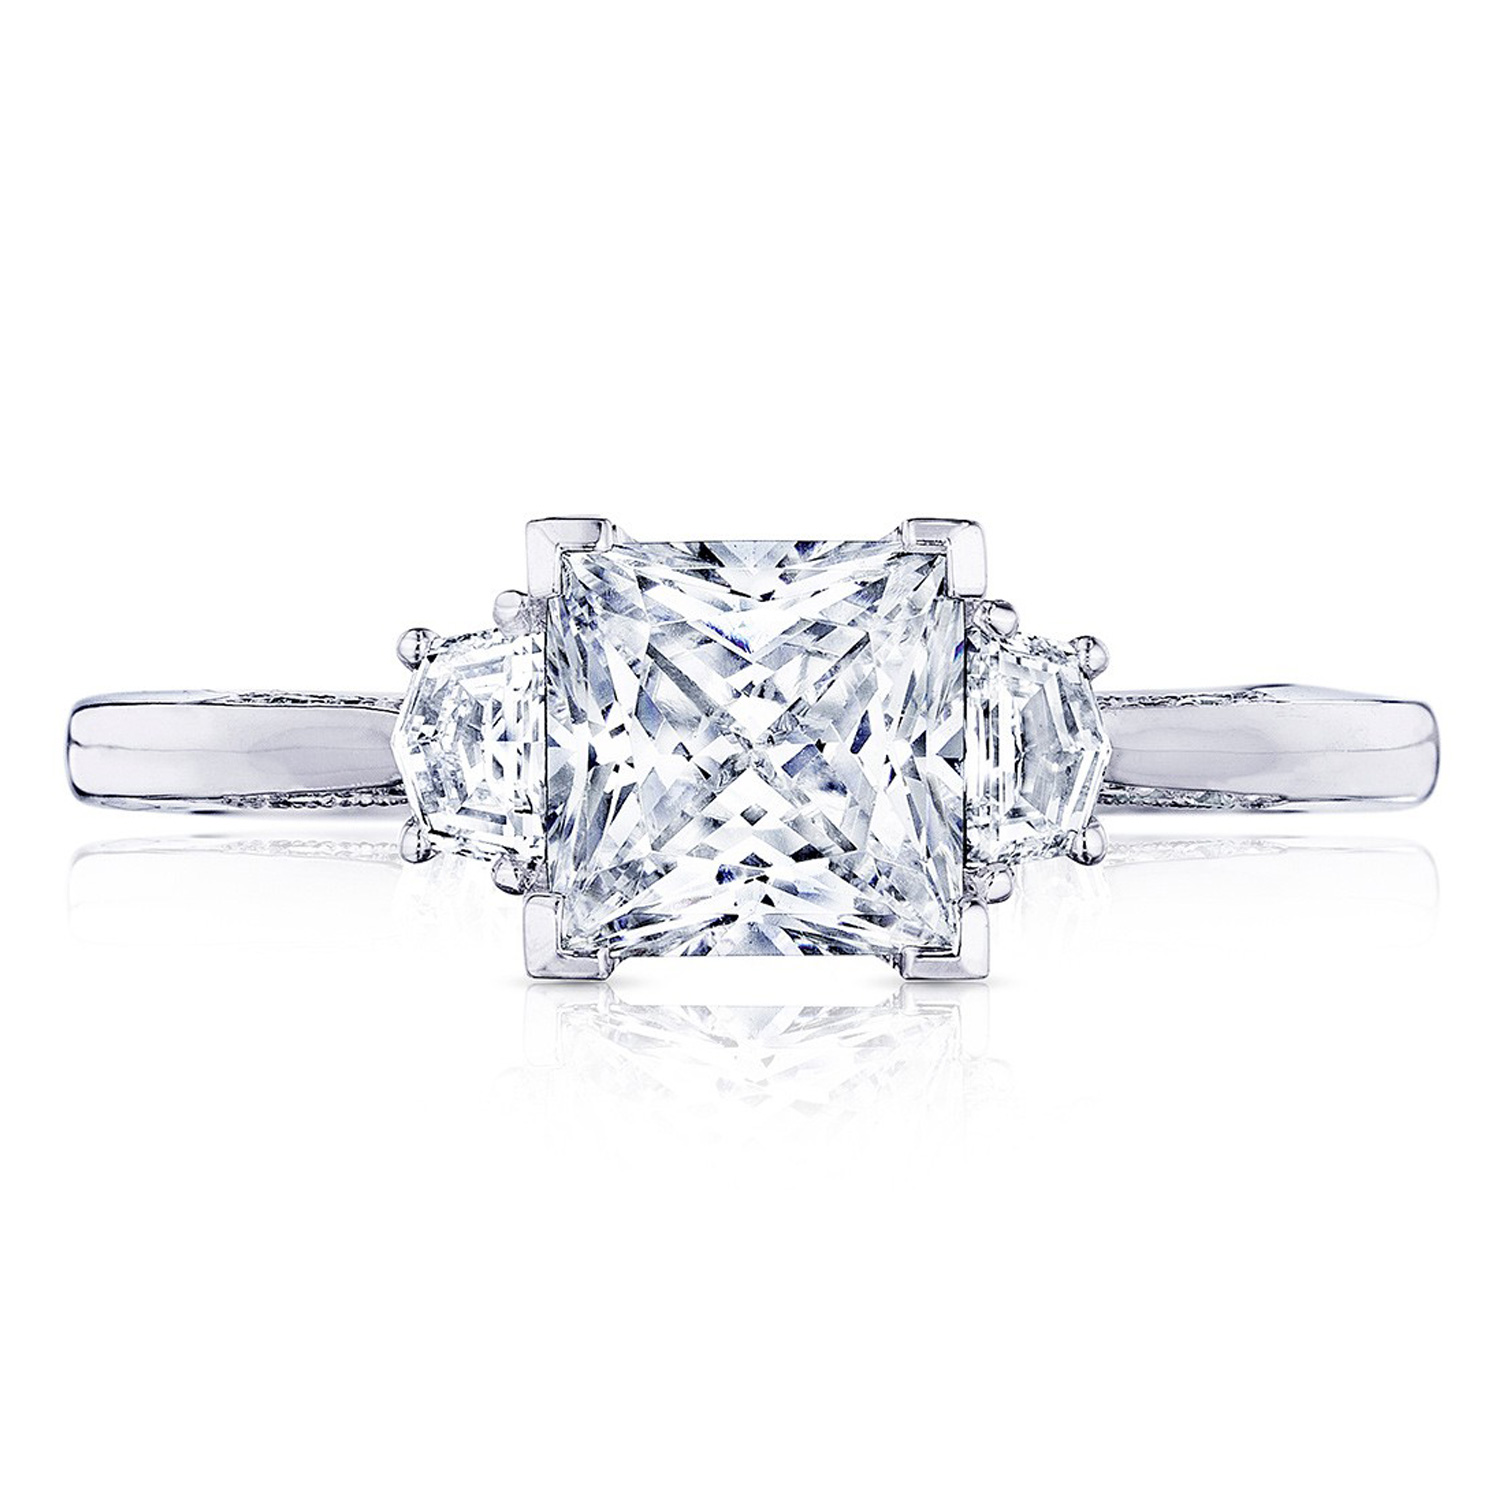 2658PR6 Platinum Simply Tacori Engagement Ring